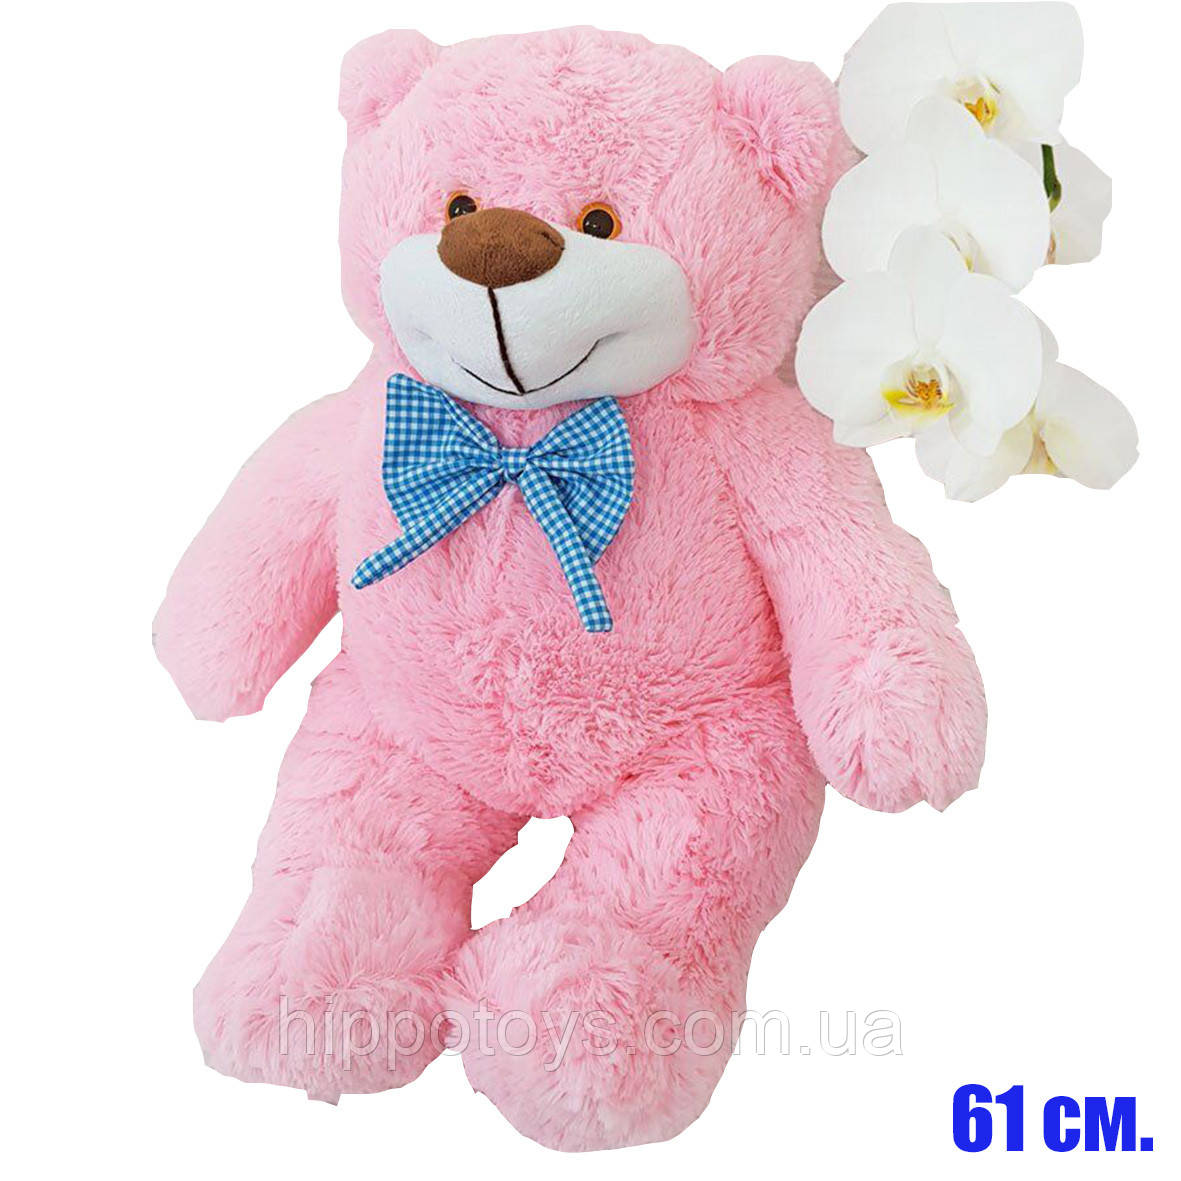 Велике плюшеве ведмежа М'яка іграшка Ведмідь плюшевий 61 см Рожевий ведмідь на подарунок 5805